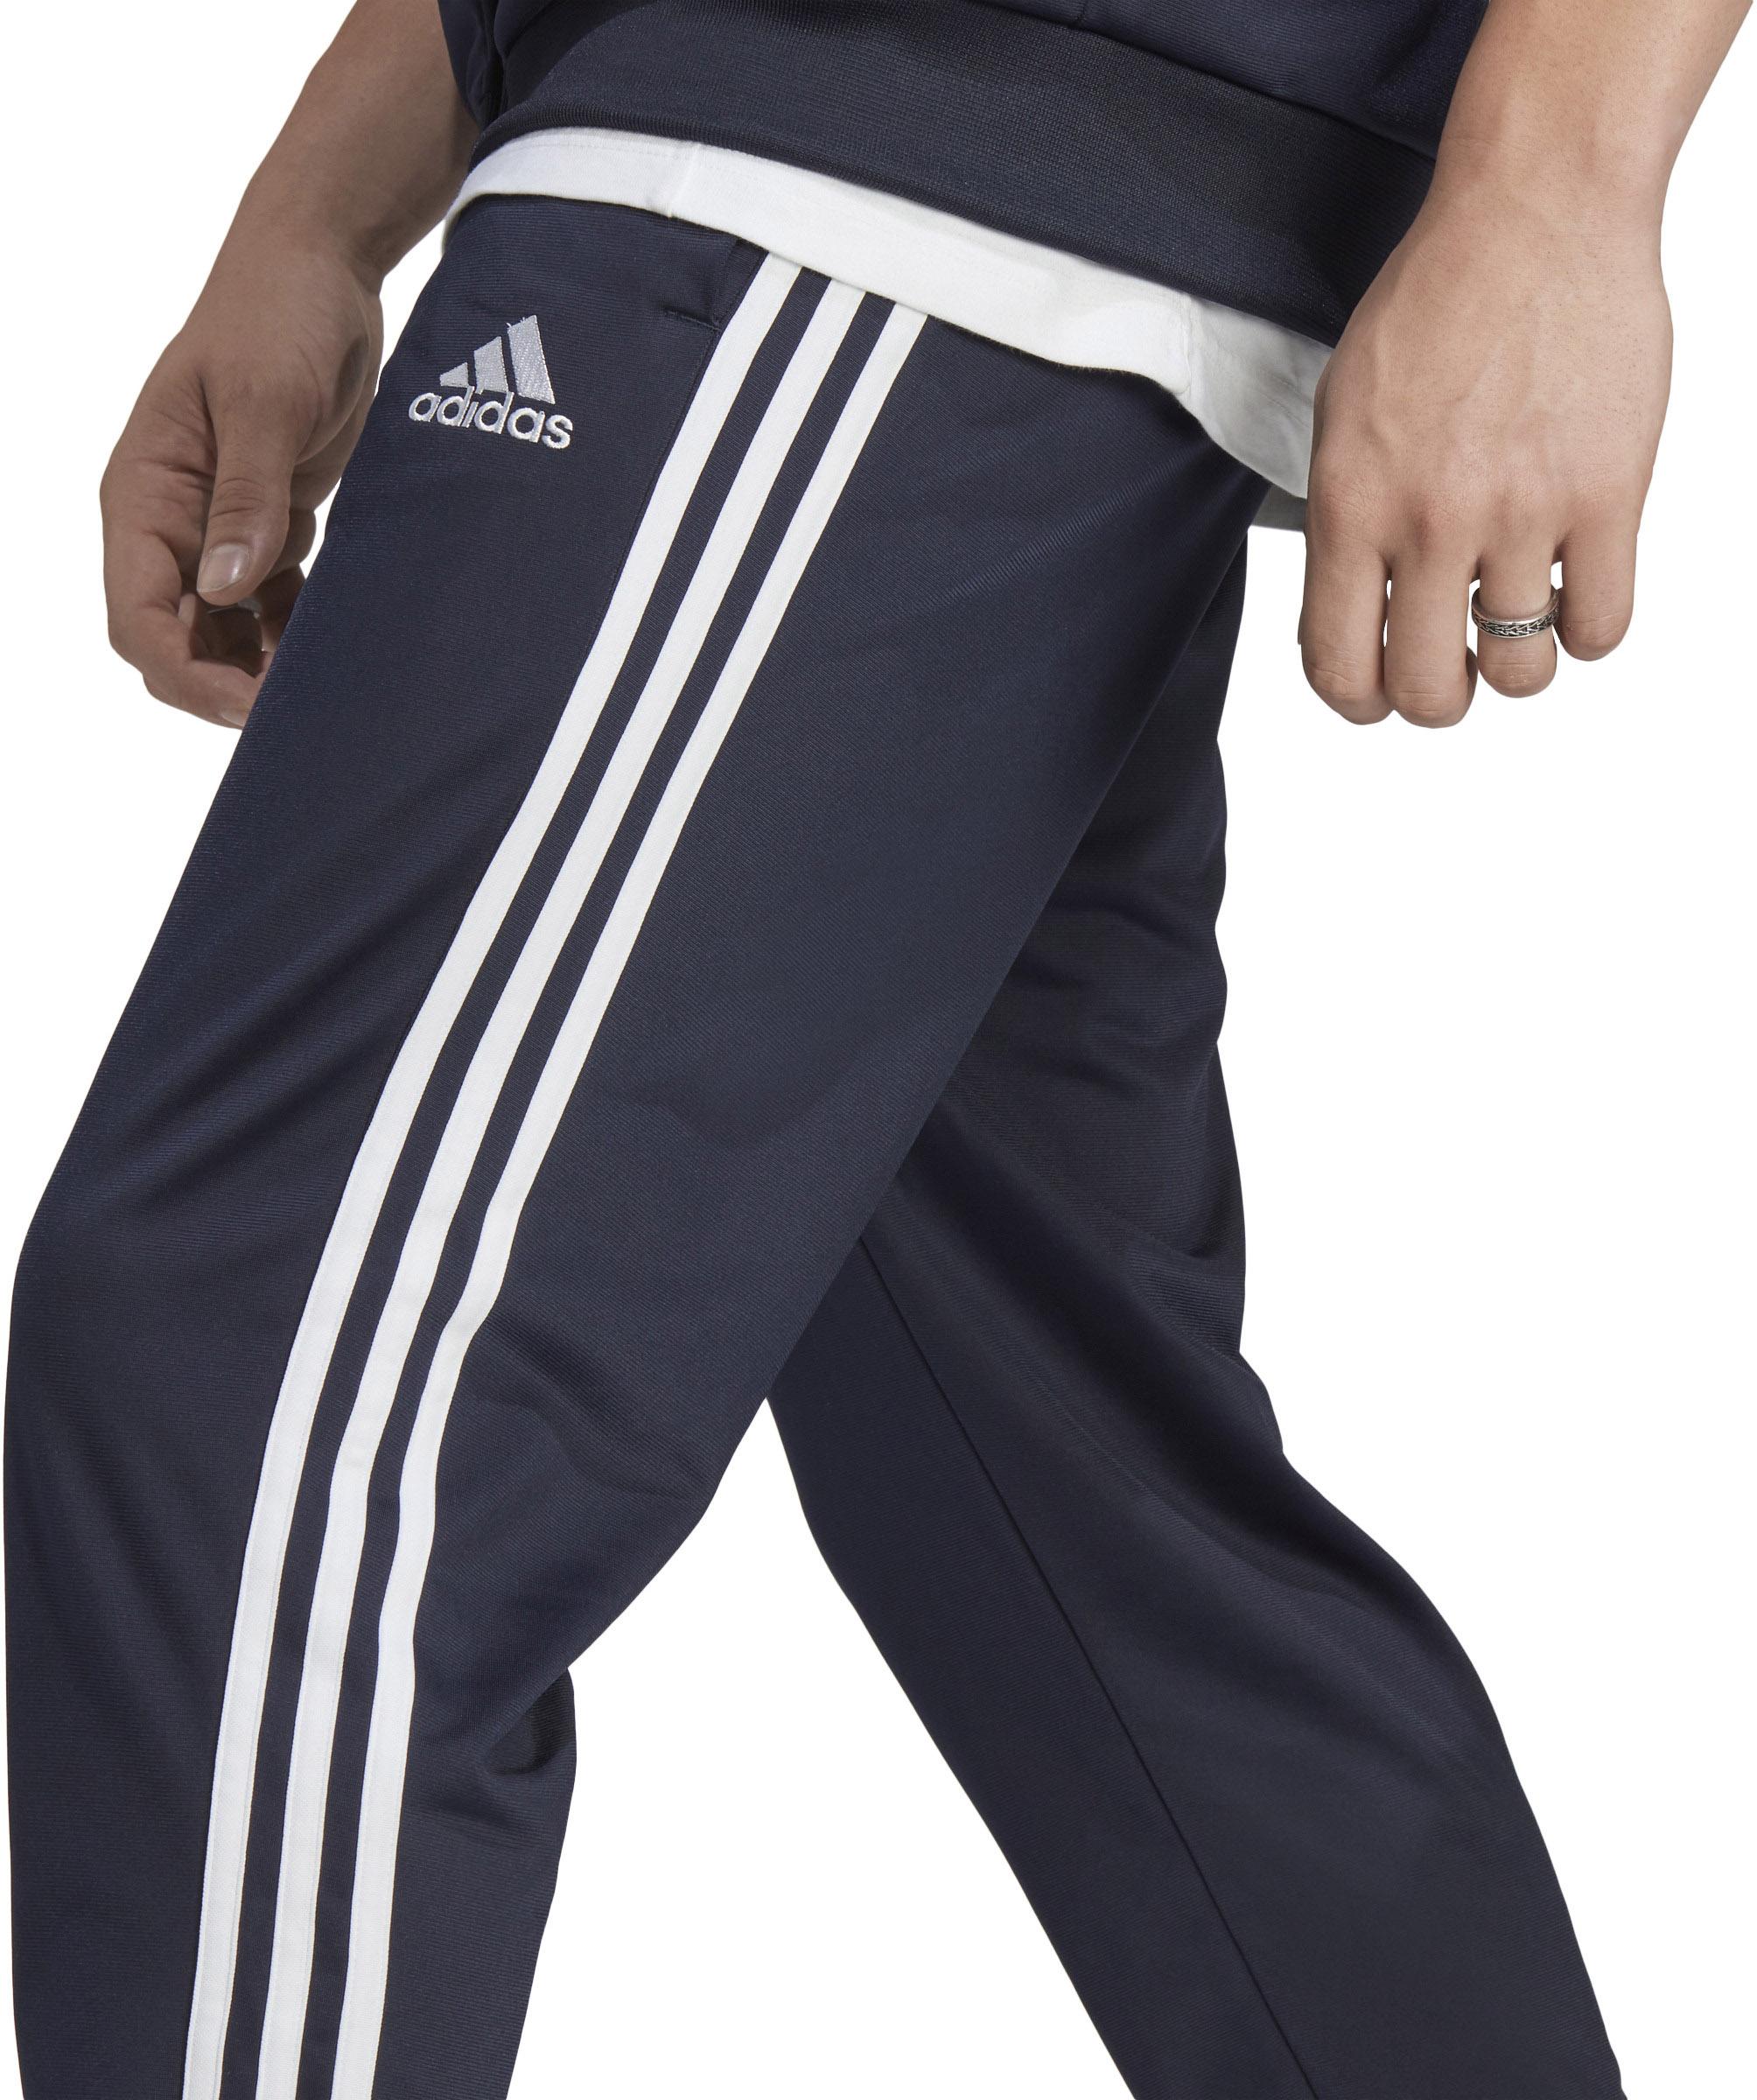 Herren TRICOT legend Shop von SportScheck Online 3-STREIFEN im ink-white Trainingsanzug Adidas BASIC kaufen